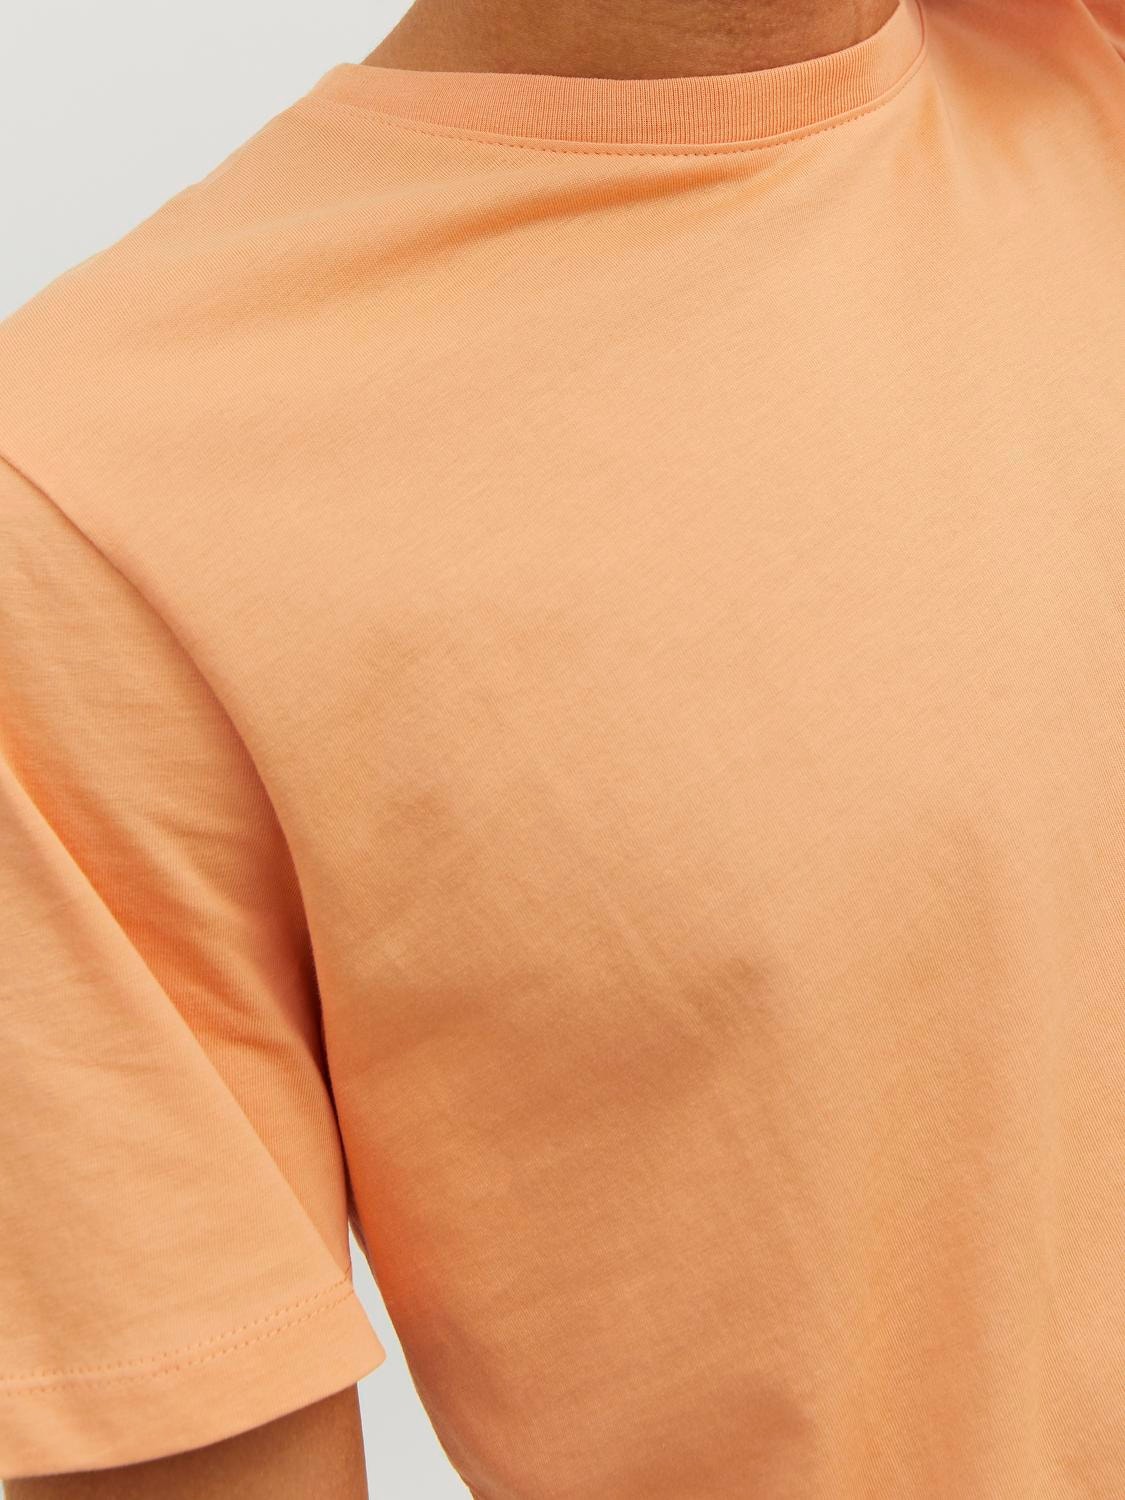 Jack & Jones Standard Fit O-Neck T-Shirt -Pumpkin - 12156101